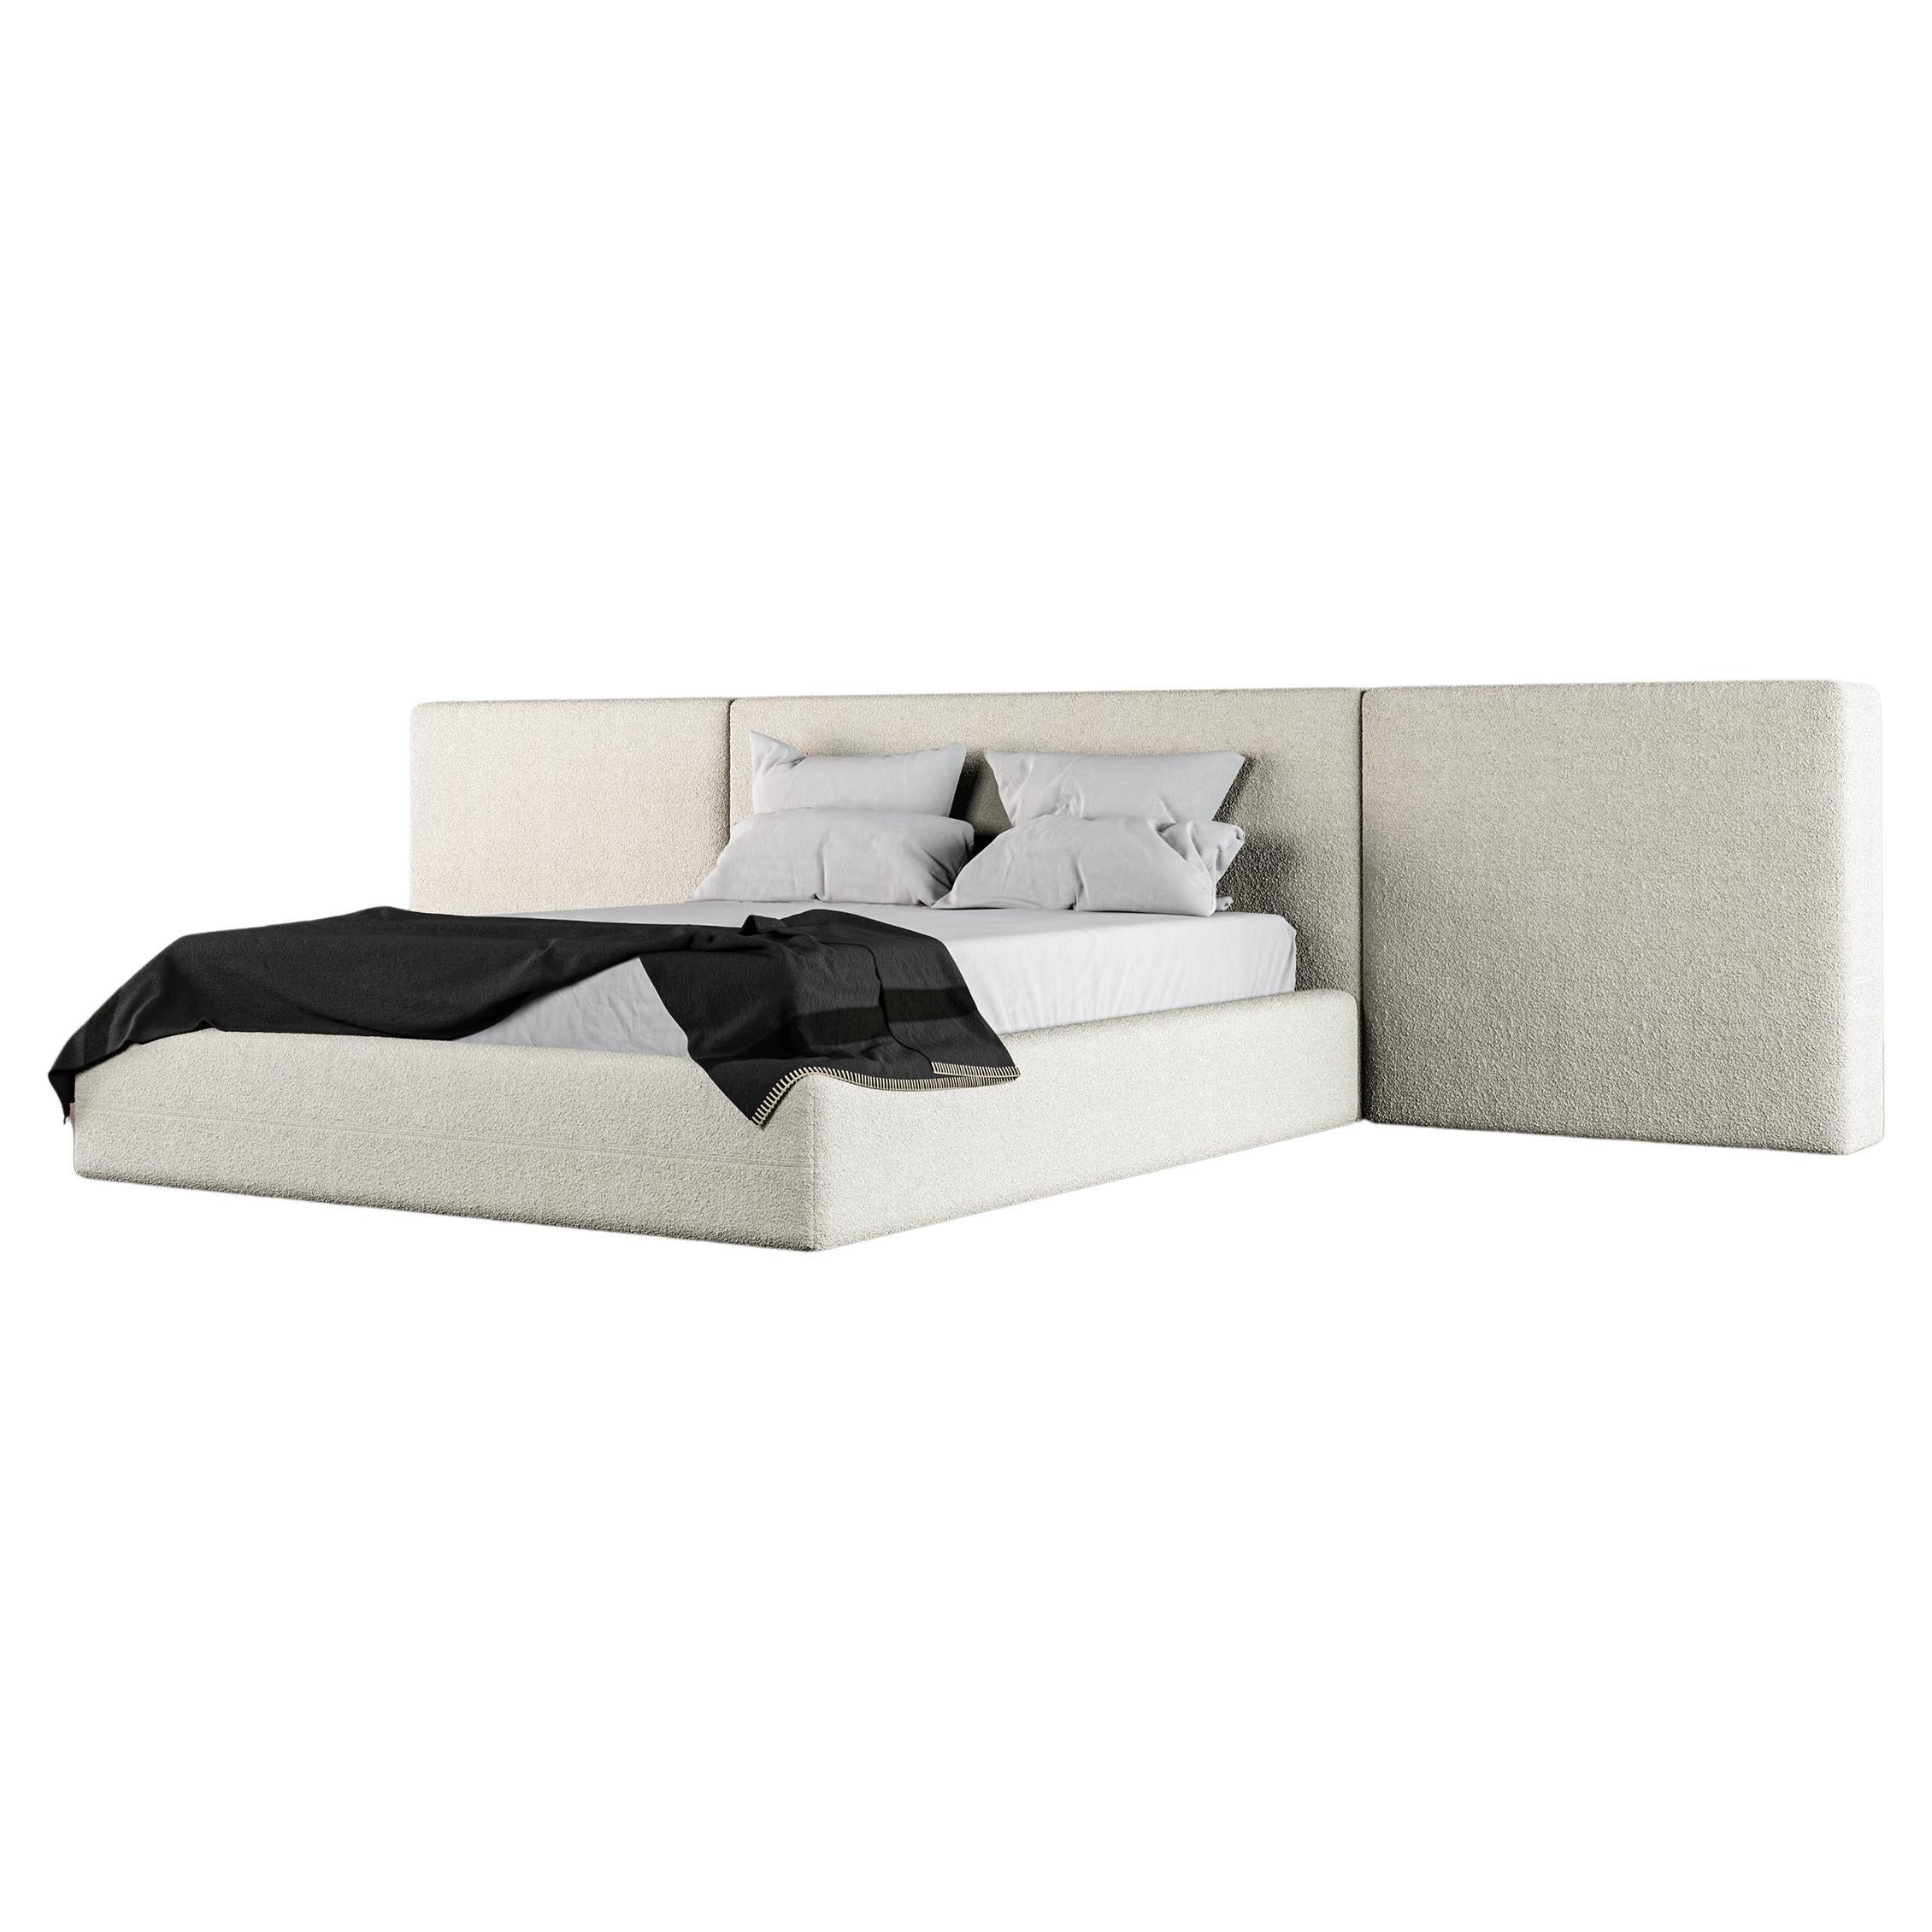 Drift Bed - Modern Design in Soft White Boucle